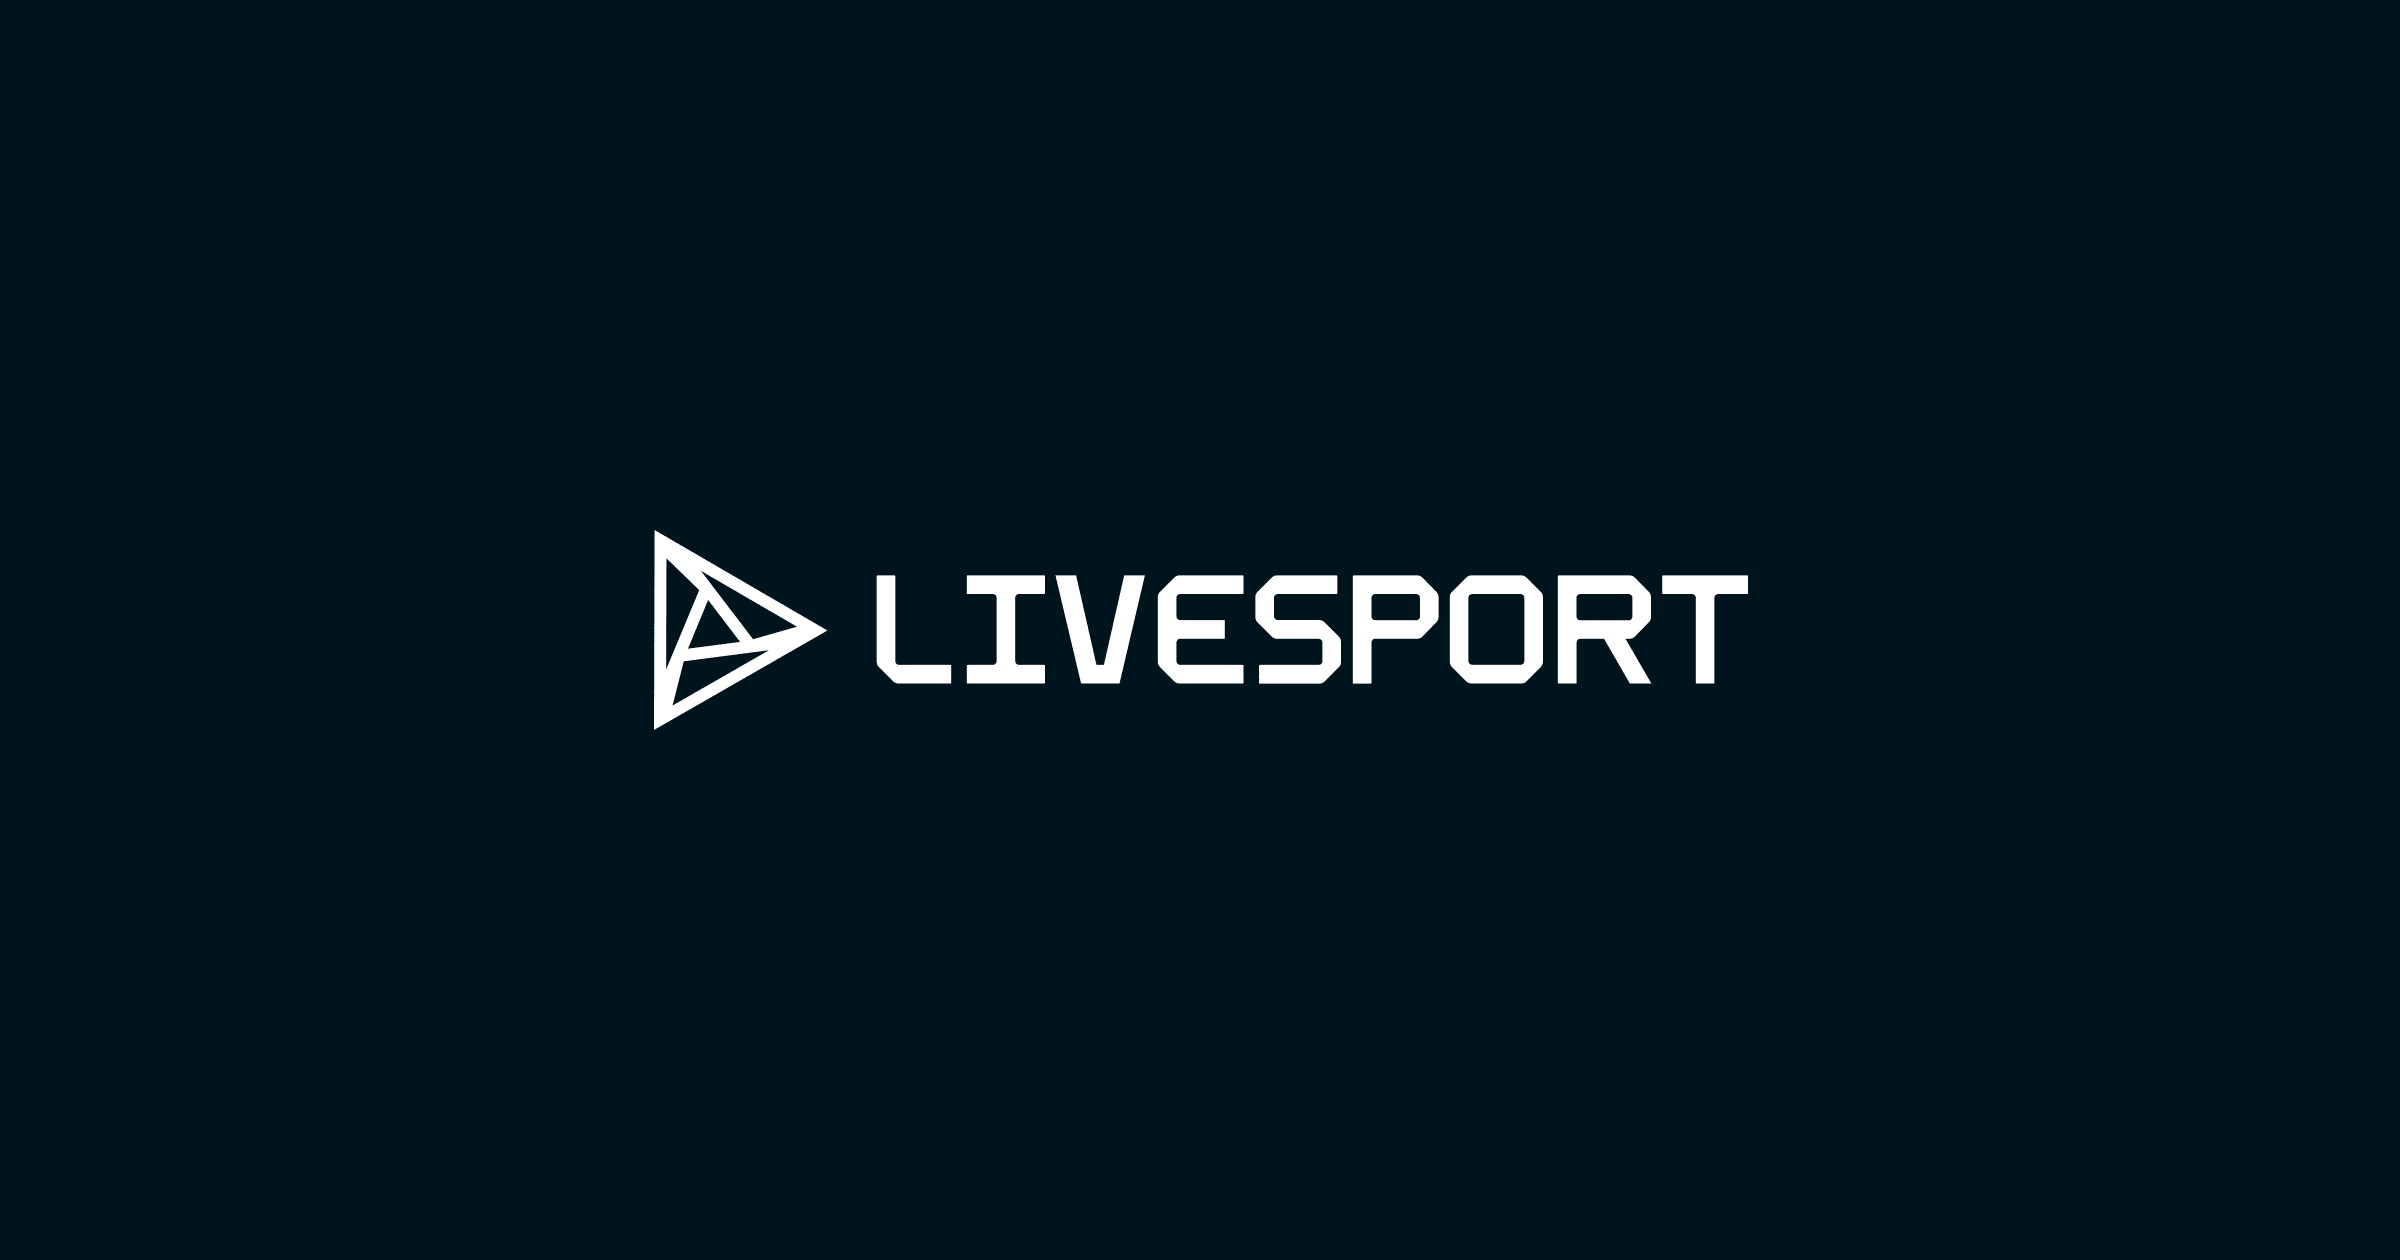 Livesport: 토트넘 - 결과, 일정, 아스널 vs 토트넘 live